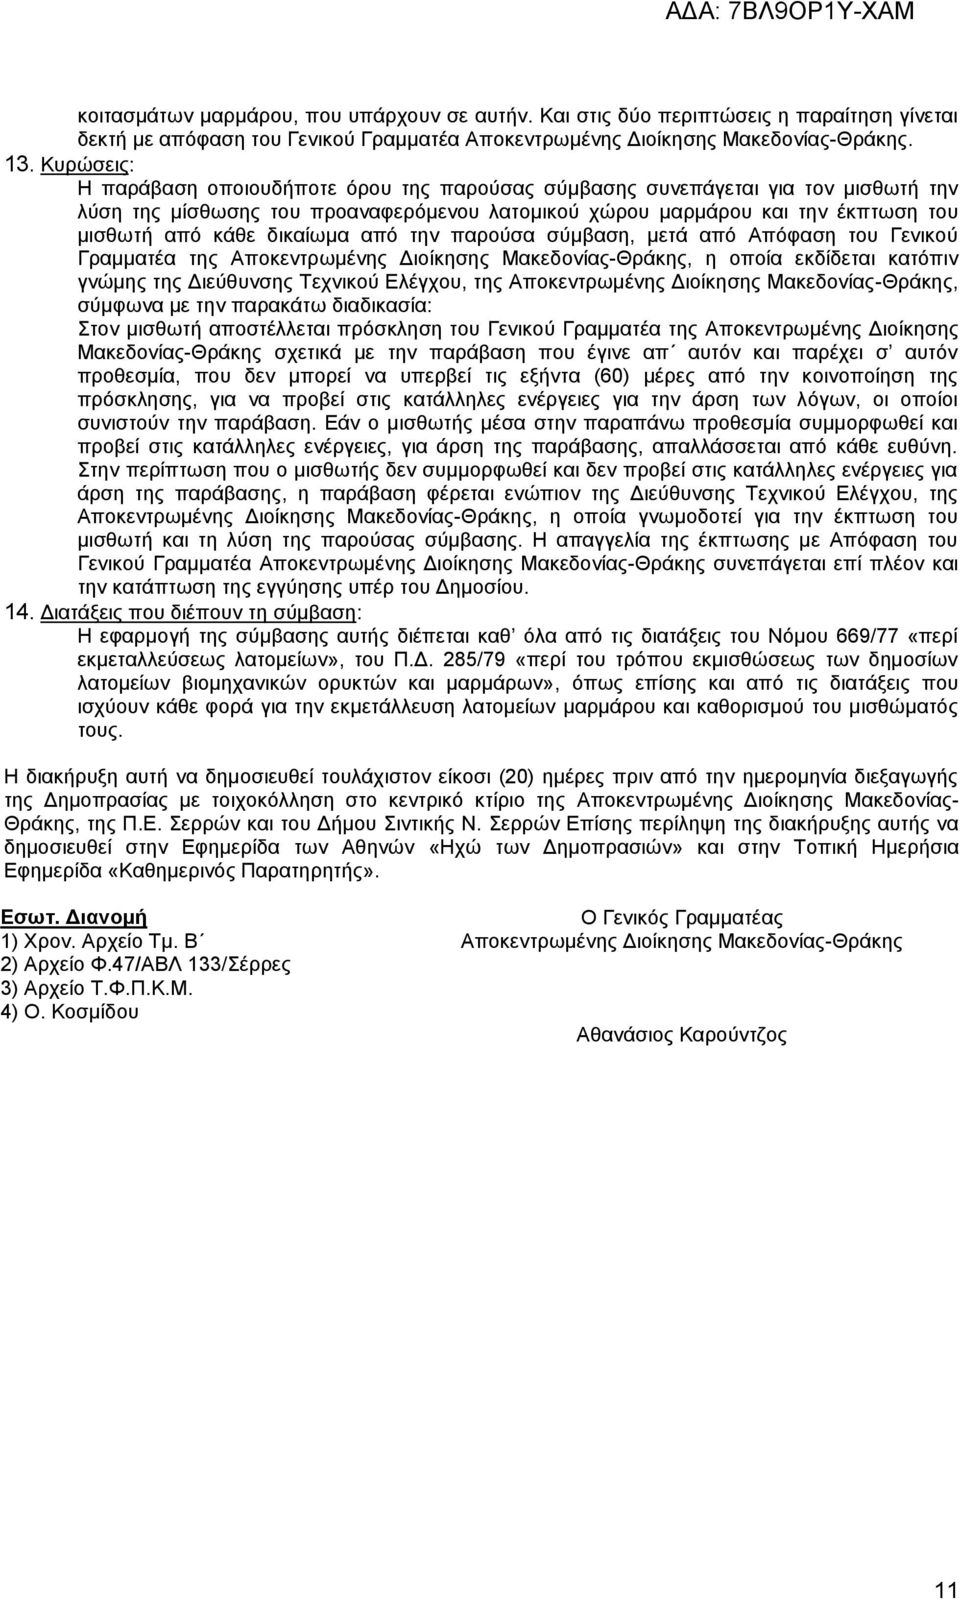 δικαίωμα από την παρούσα σύμβαση, μετά από Απόφαση του Γενικού Γραμματέα της Αποκεντρωμένης Διοίκησης Μακεδονίας-Θράκης, η οποία εκδίδεται κατόπιν γνώμης της Διεύθυνσης Τεχνικού Ελέγχου, της